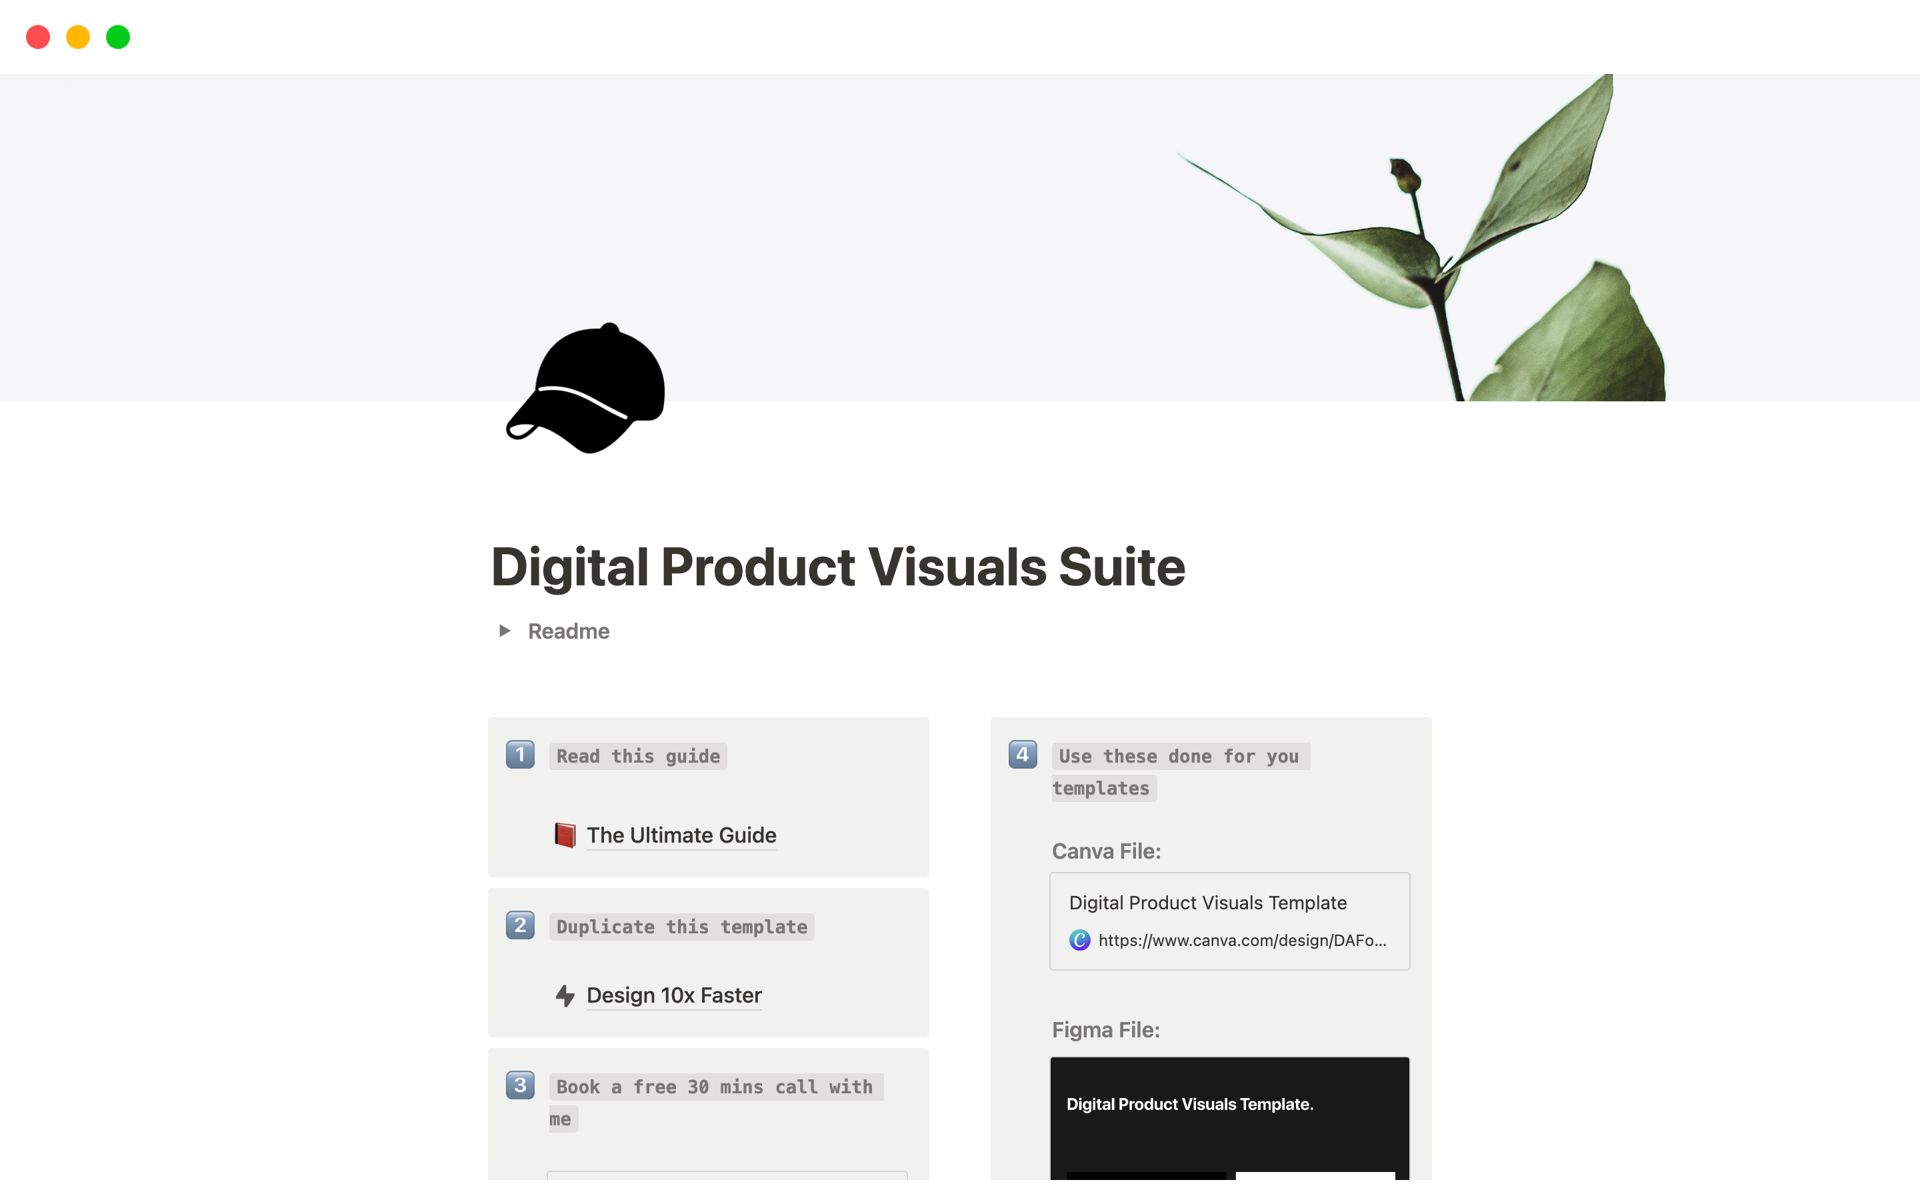 Aperçu du modèle de Digital Product Visuals Suite